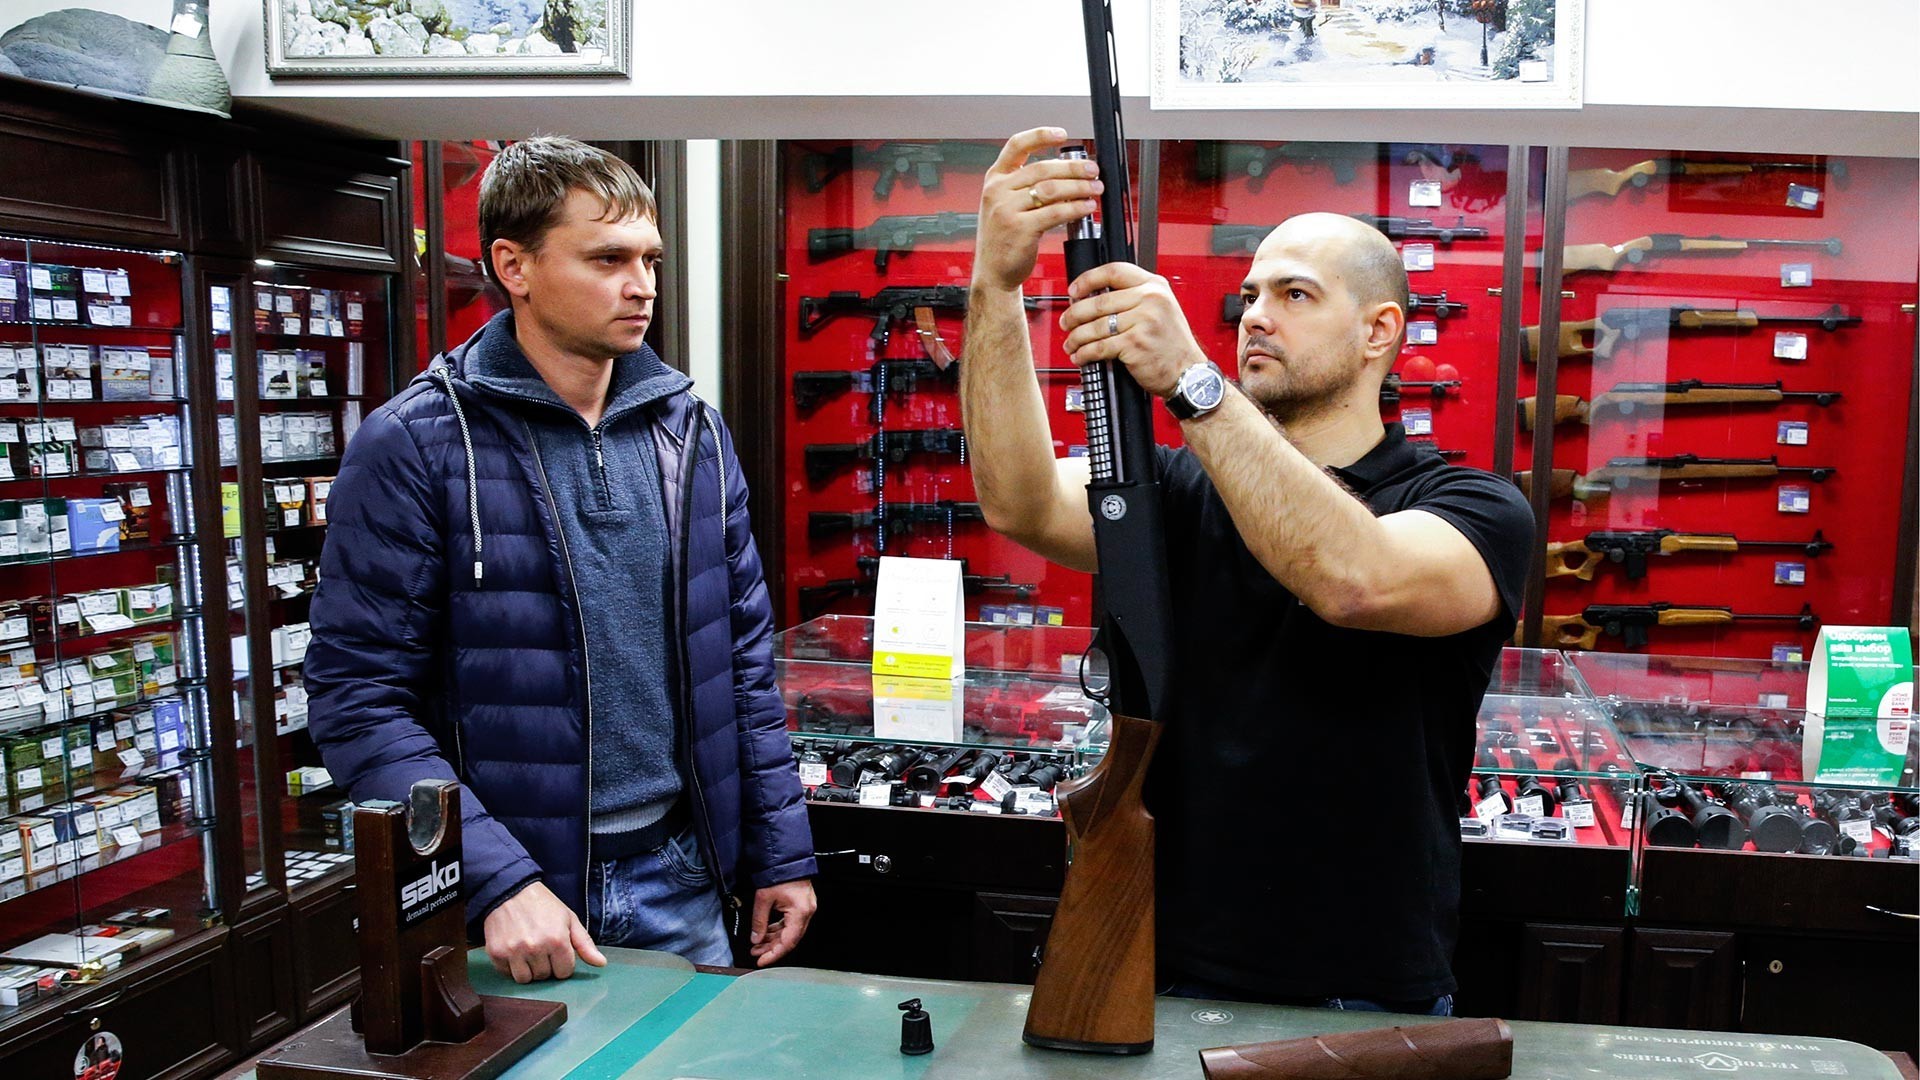 Stranka si ogleduje puške v prodajalni orožja v Čeljabinsku.